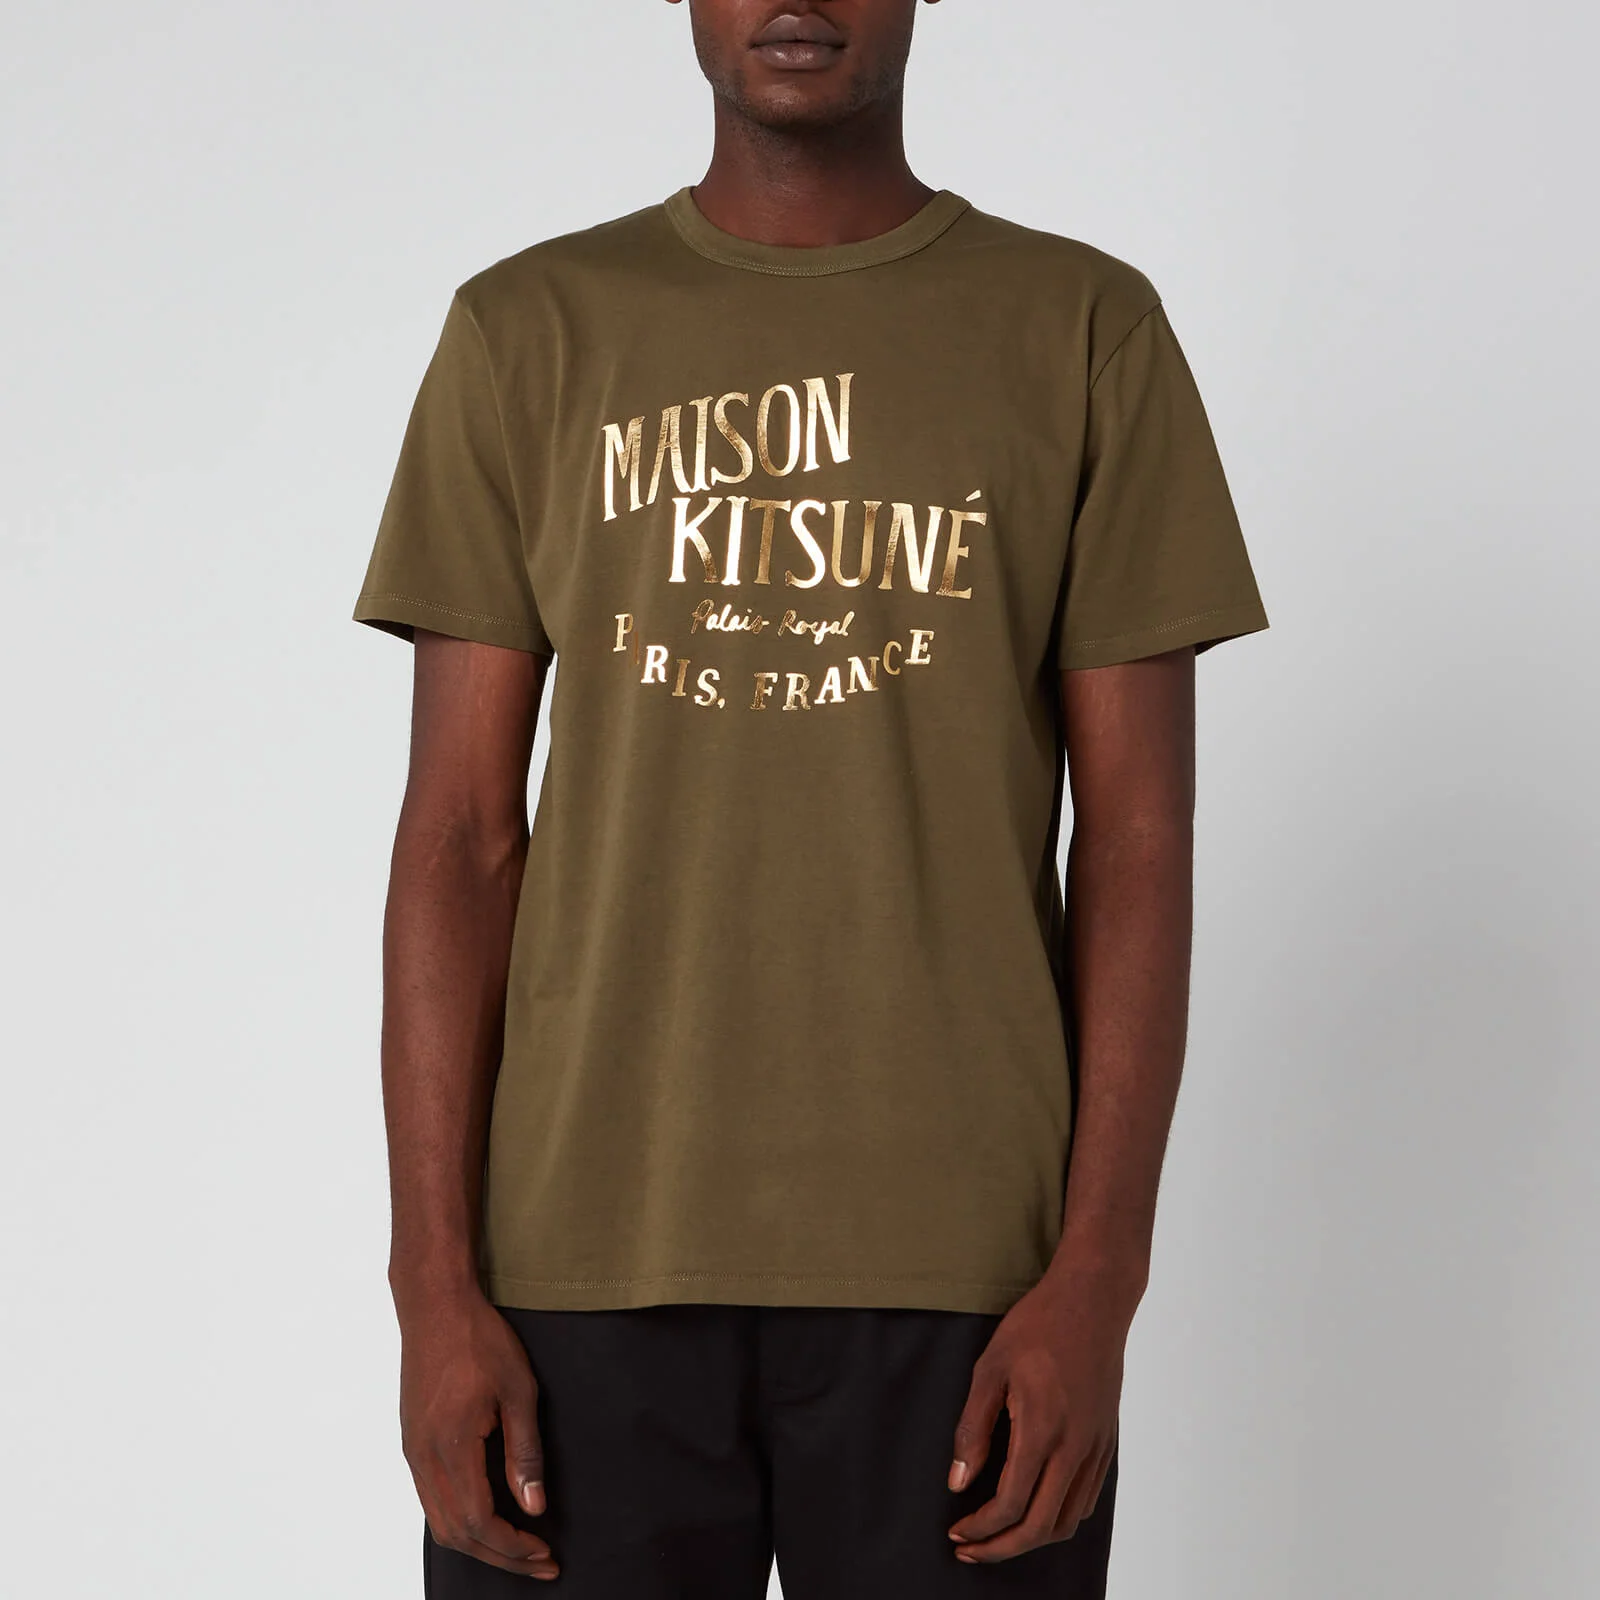 Maison Kitsuné Men's Palais Royal T-Shirt - Khaki Image 1